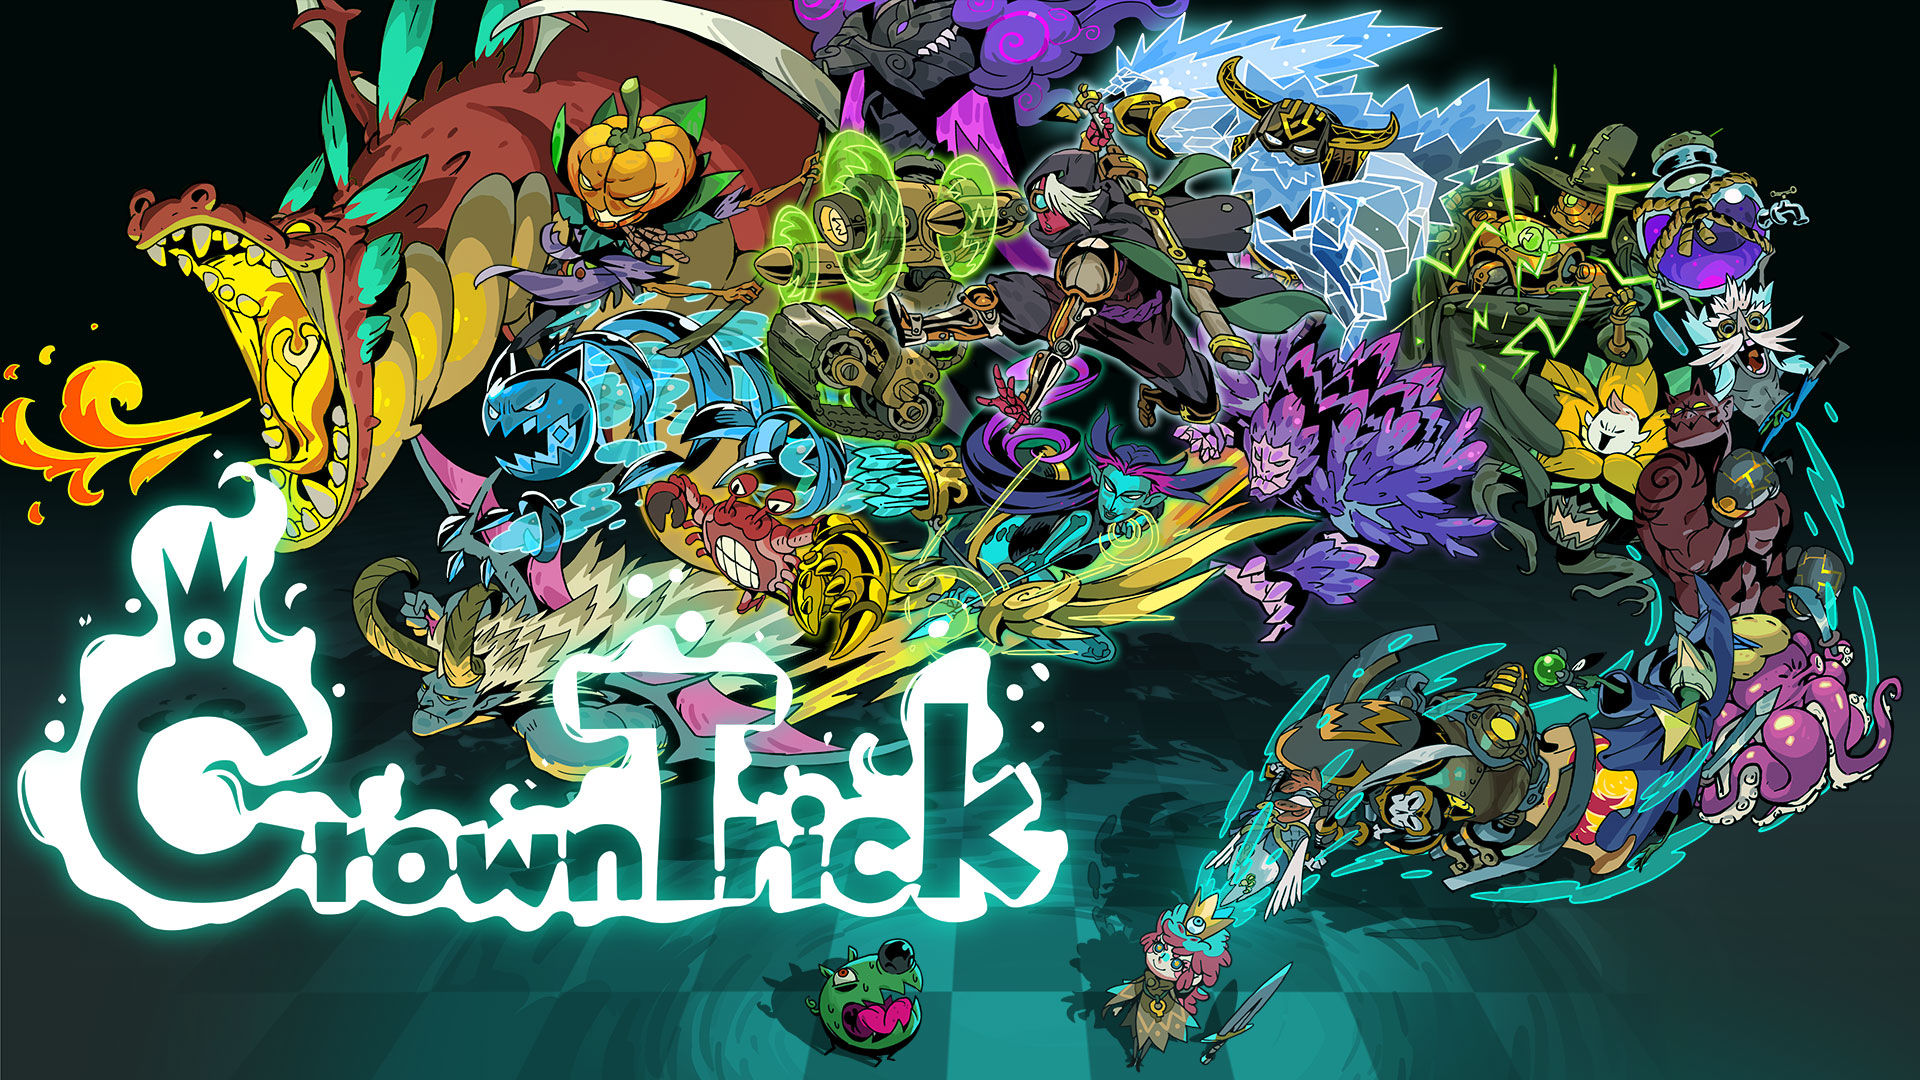 Обложка игры Crown Trick